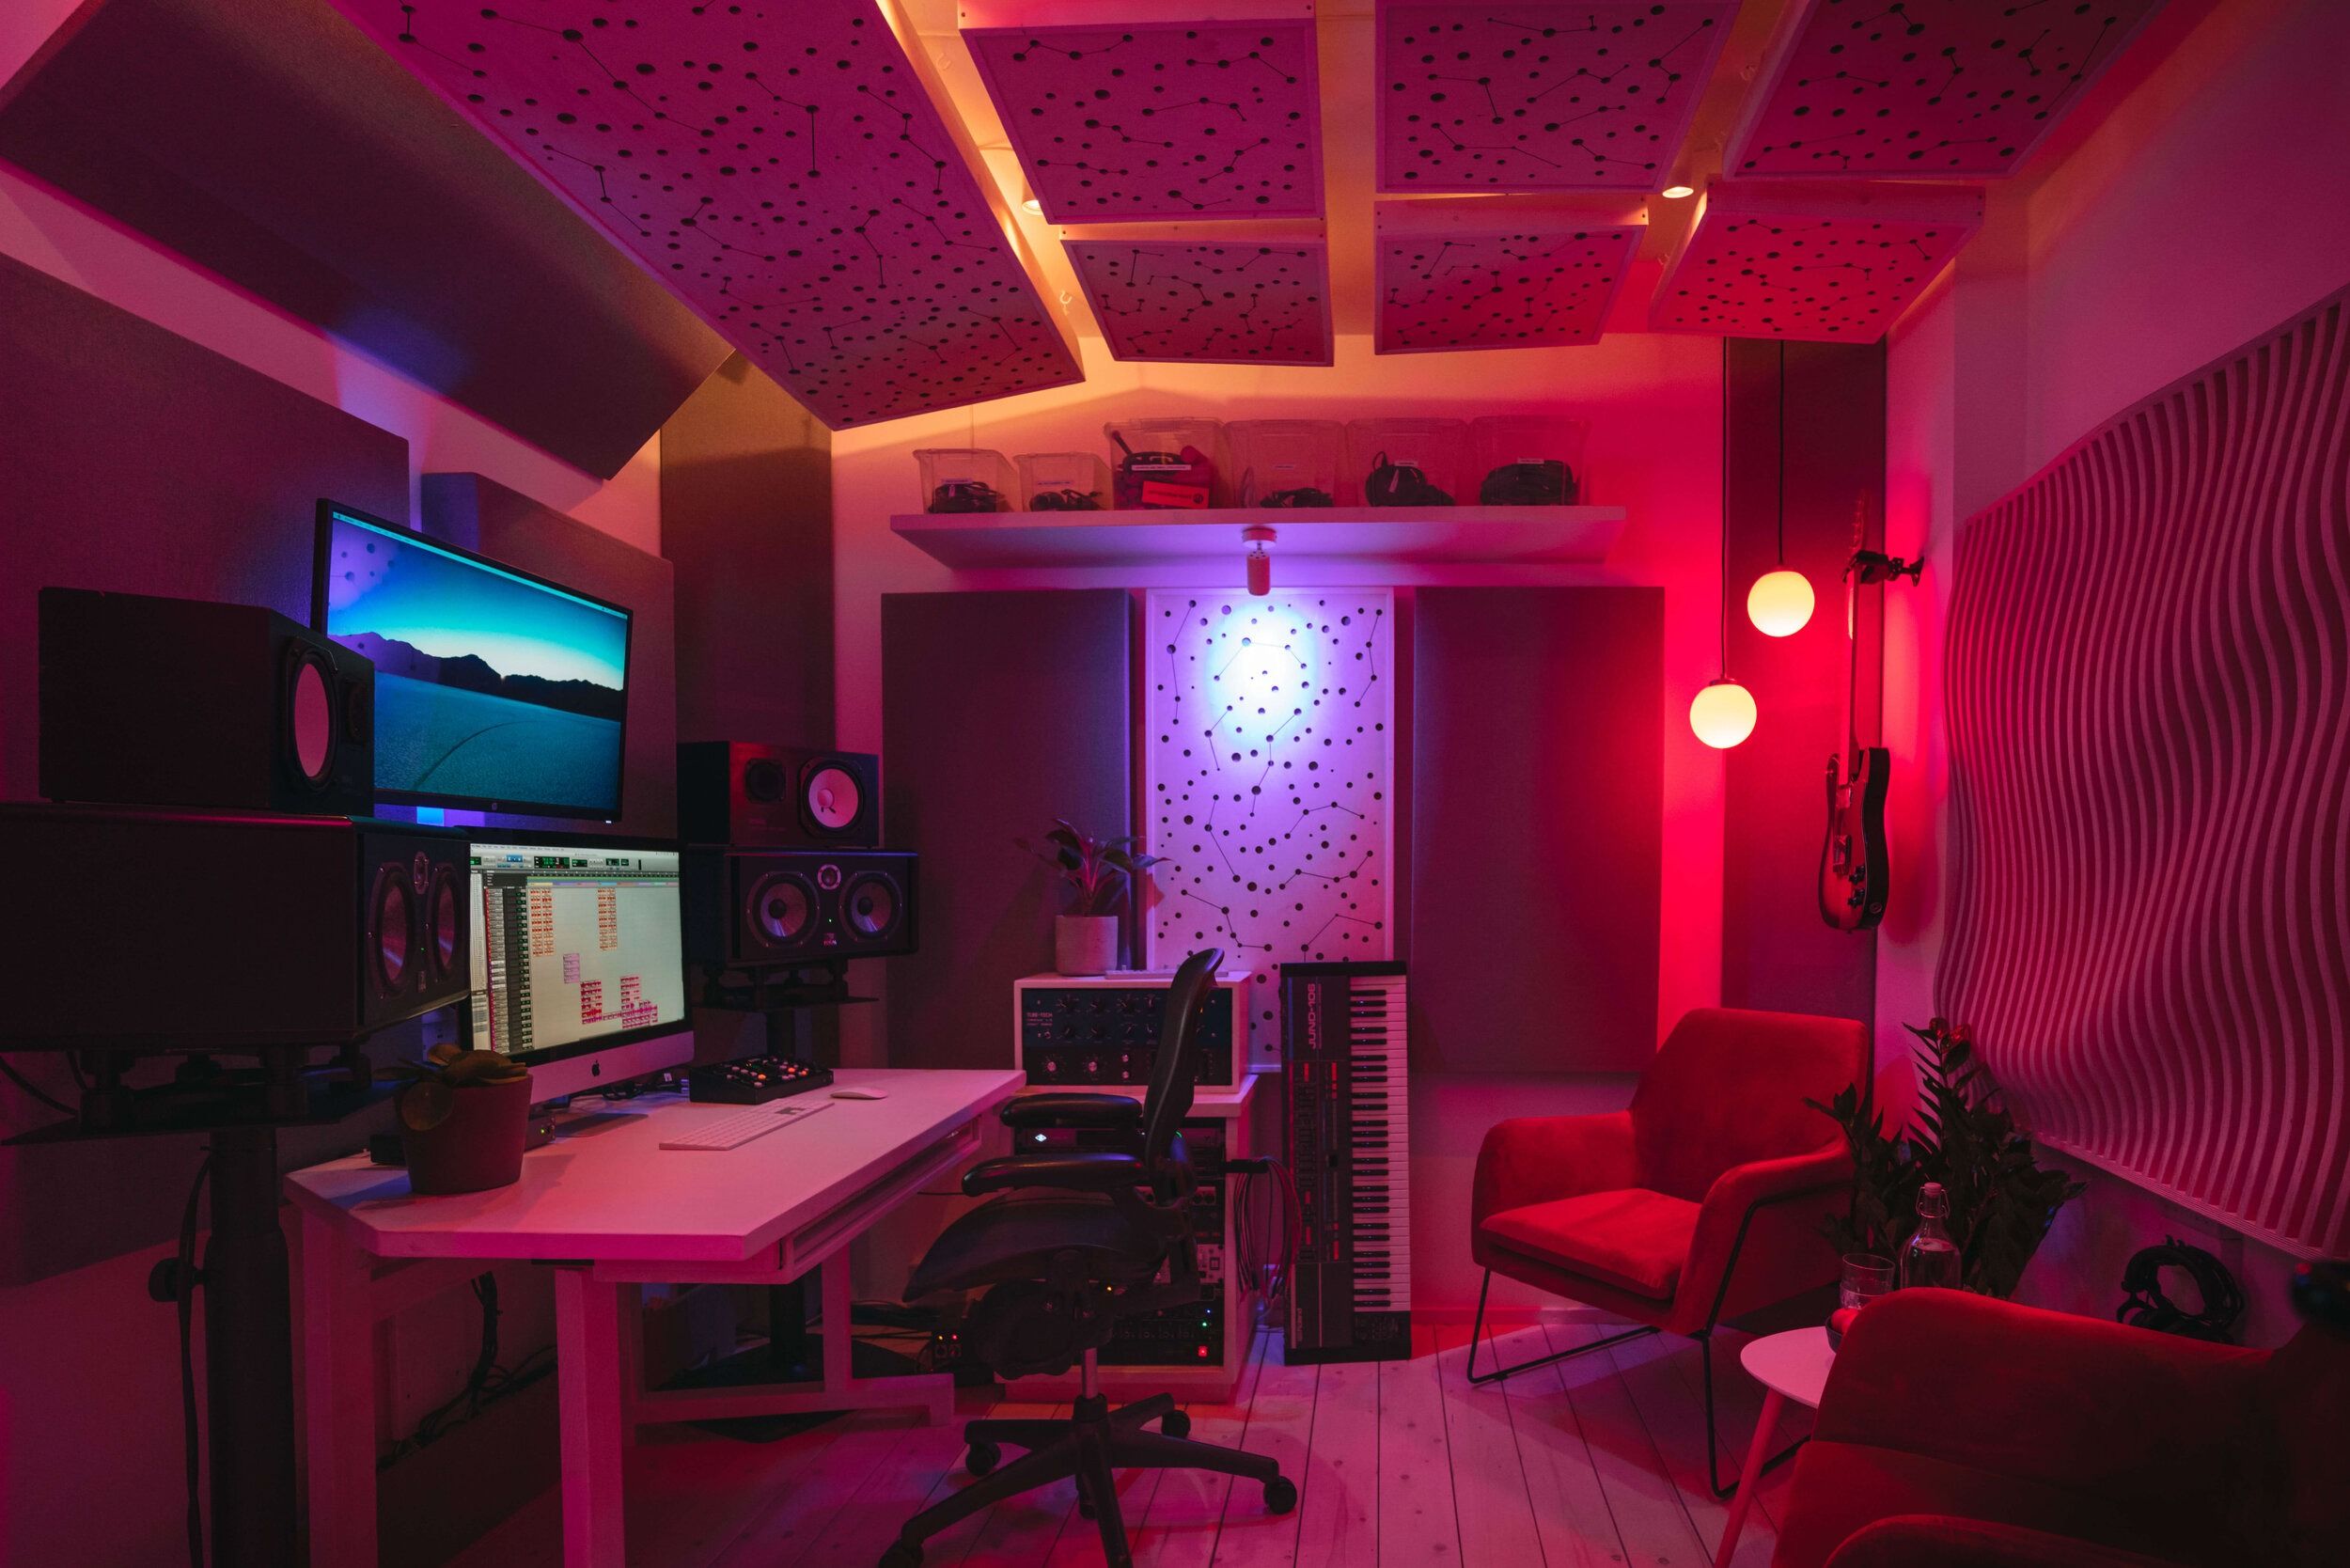 Hackney recording studios